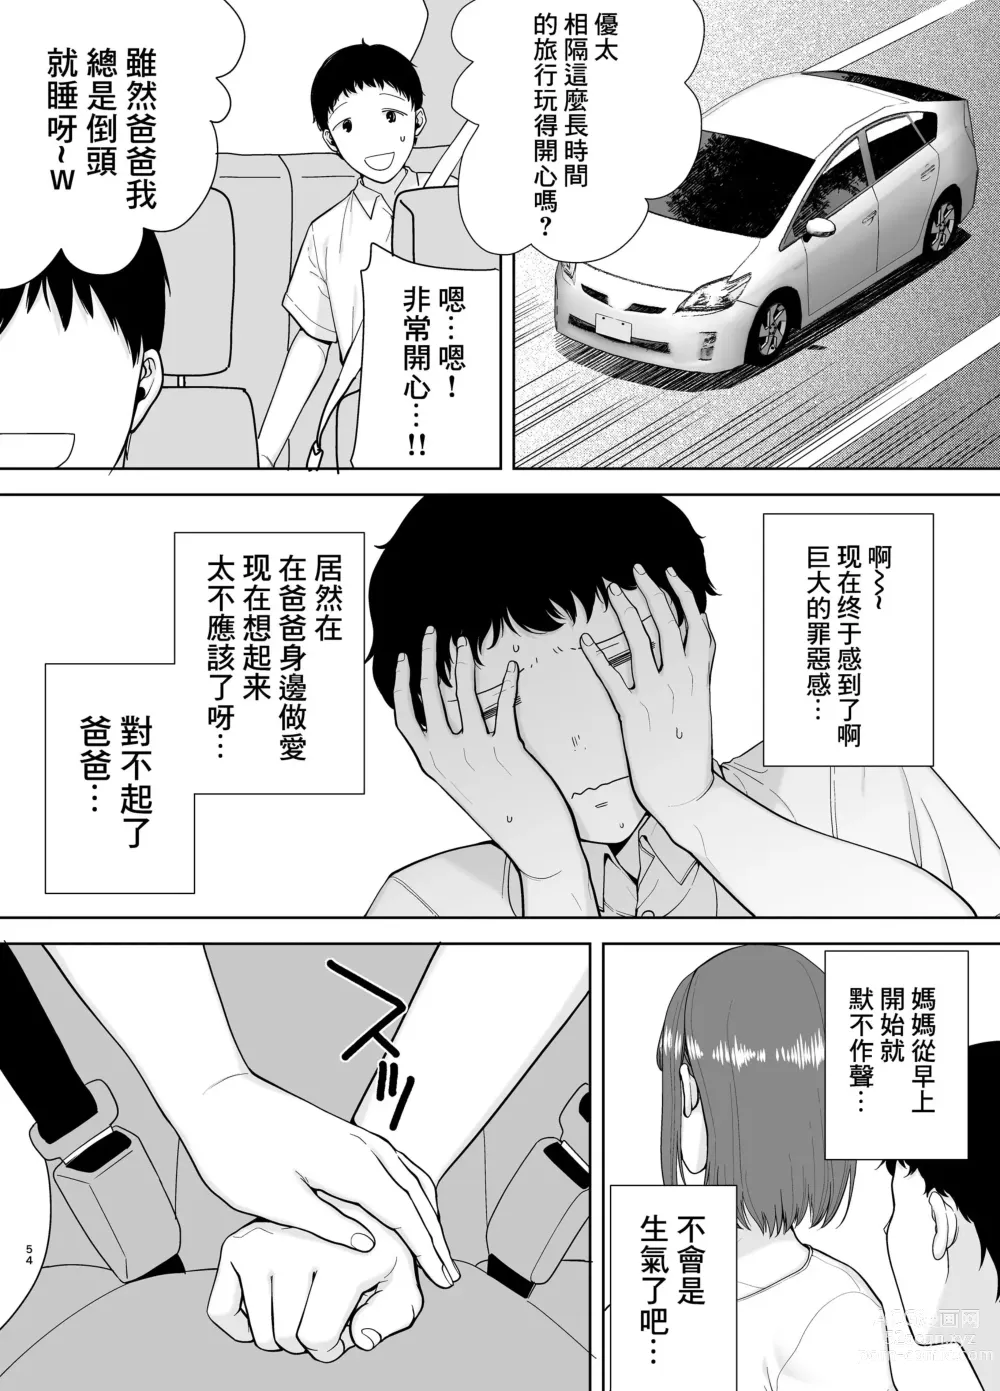 Page 54 of doujinshi 母印堂4